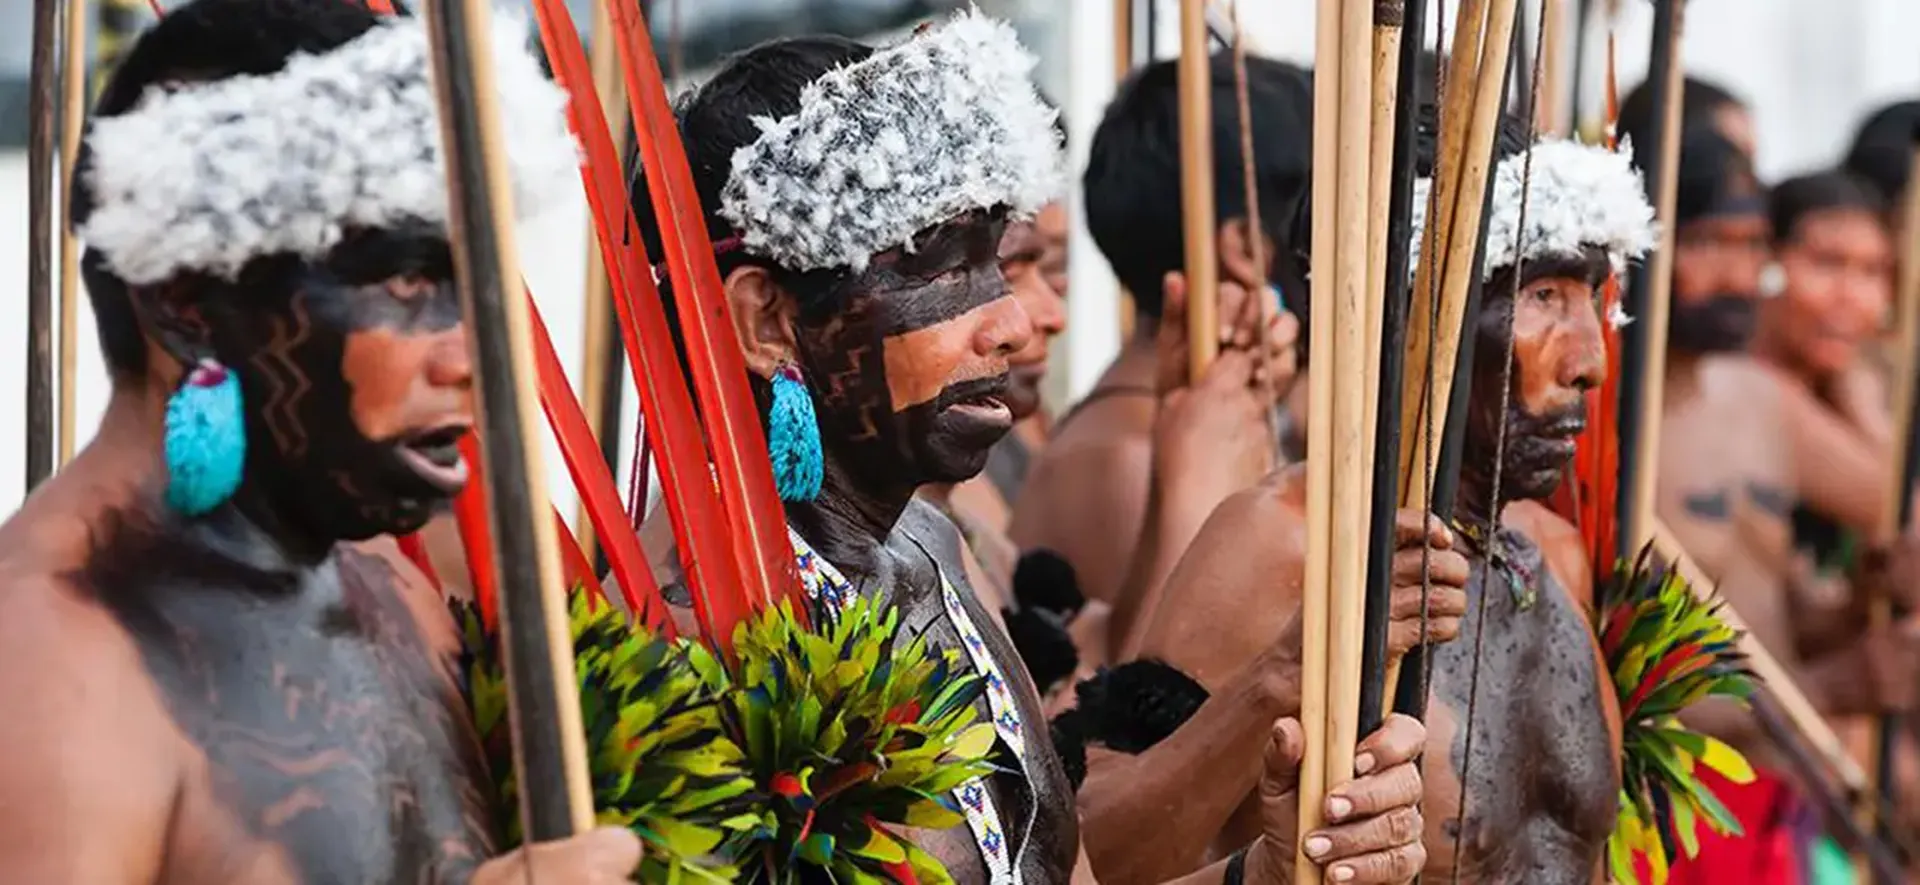 Urgência da questão Yanomami foi constatada em missão exploratória, aponta relatório